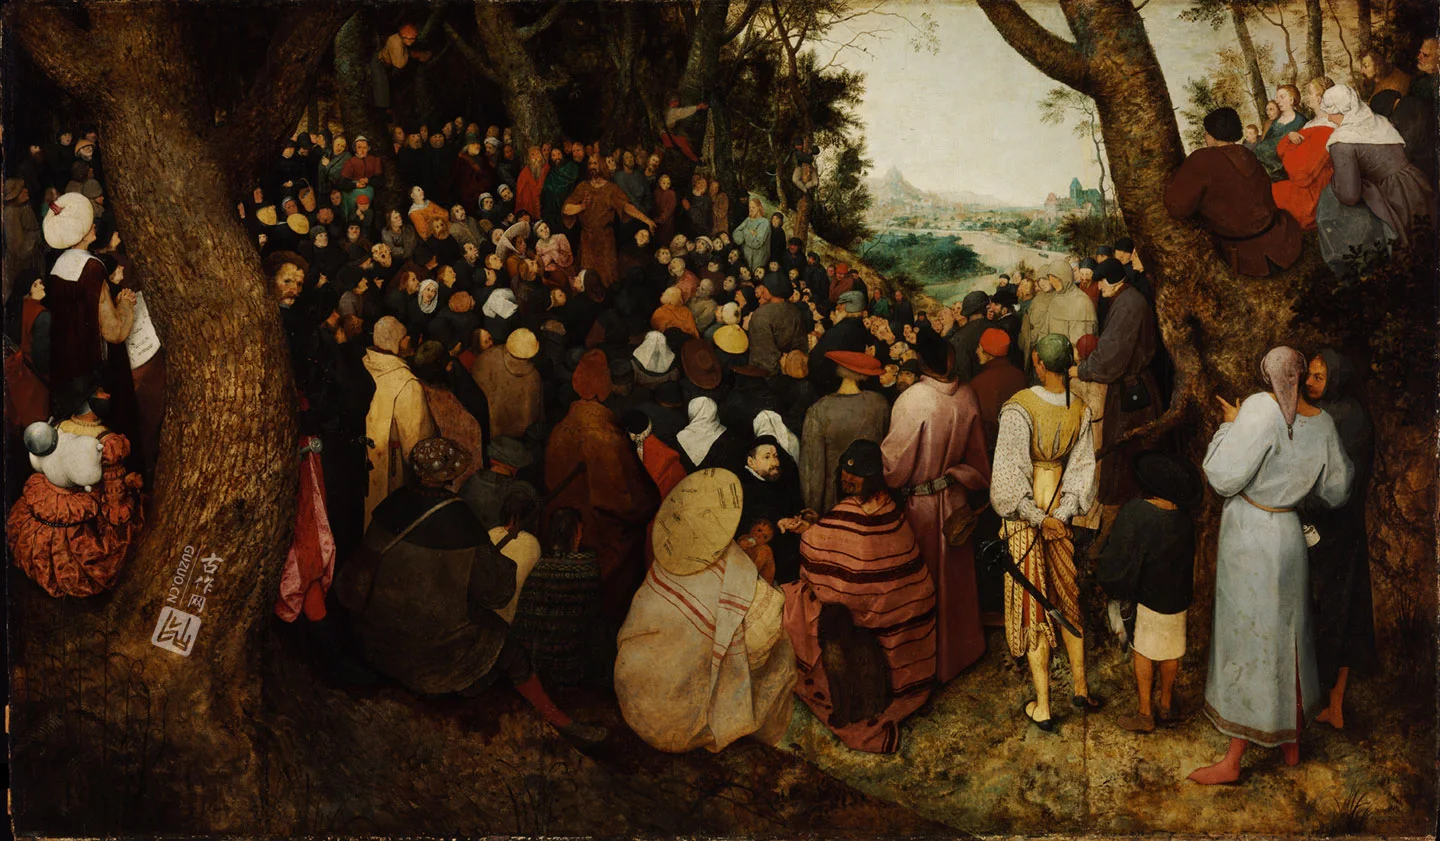 彼得·勃鲁盖尔作品《圣约翰洗者的讲道》高清大图